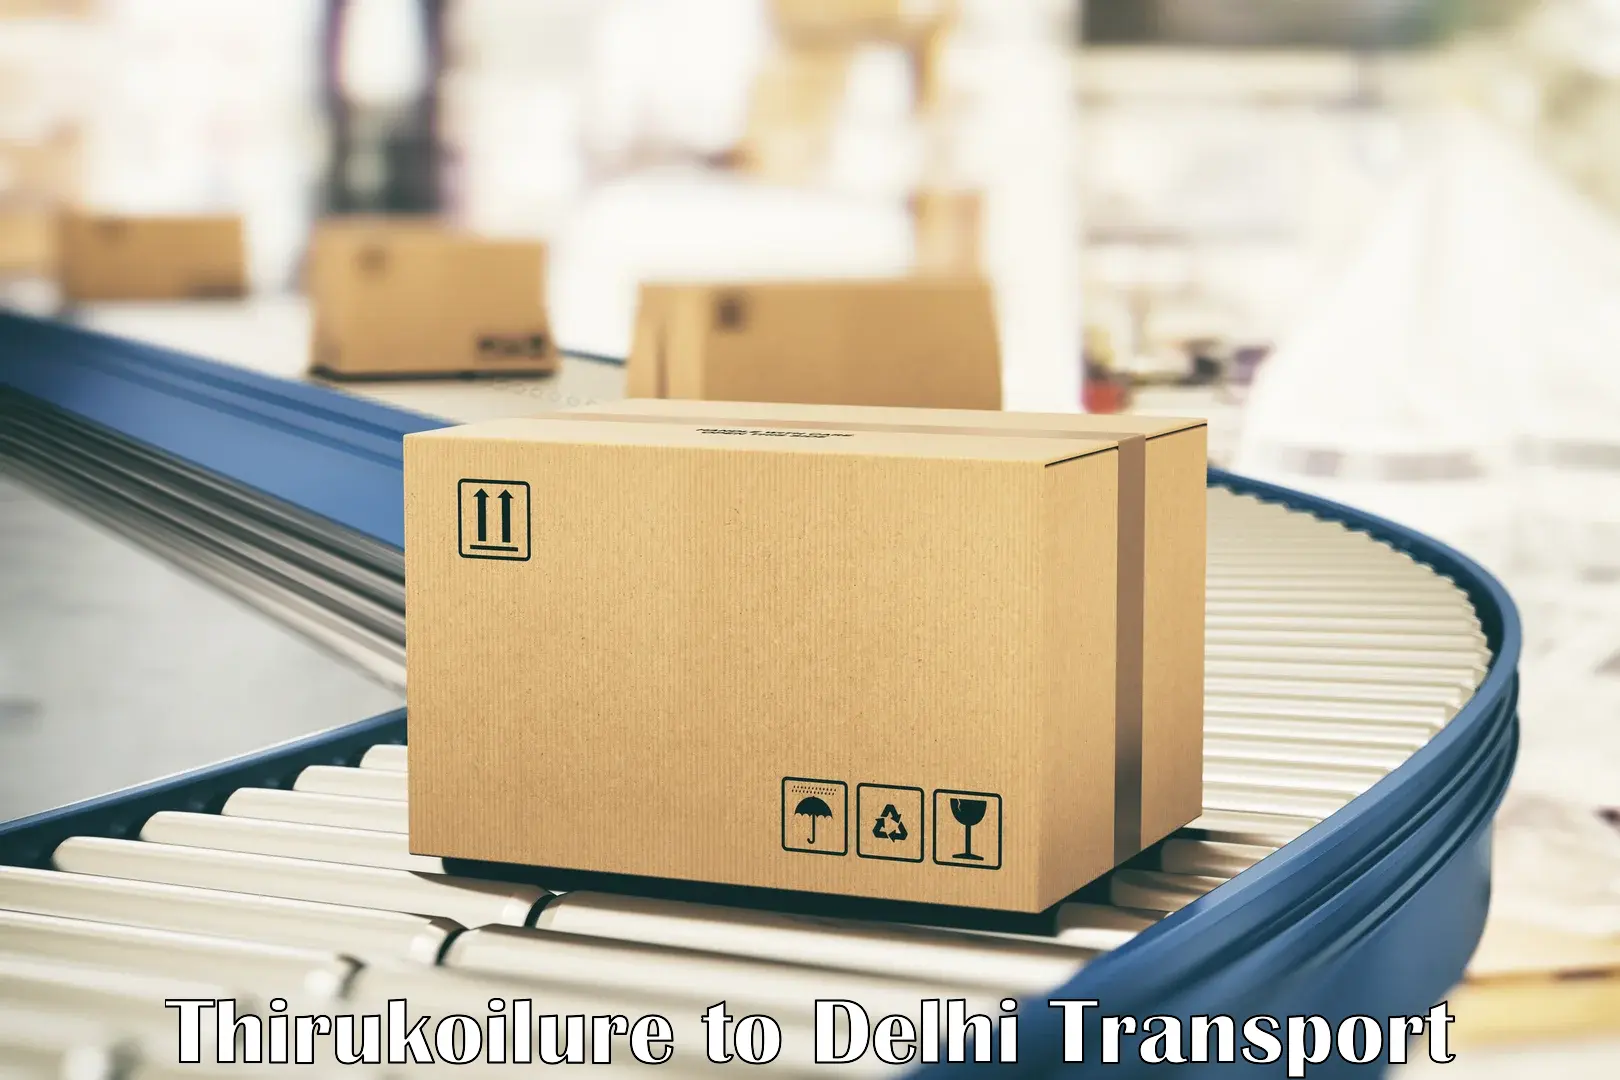 Goods transport services Thirukoilure to Jamia Millia Islamia New Delhi